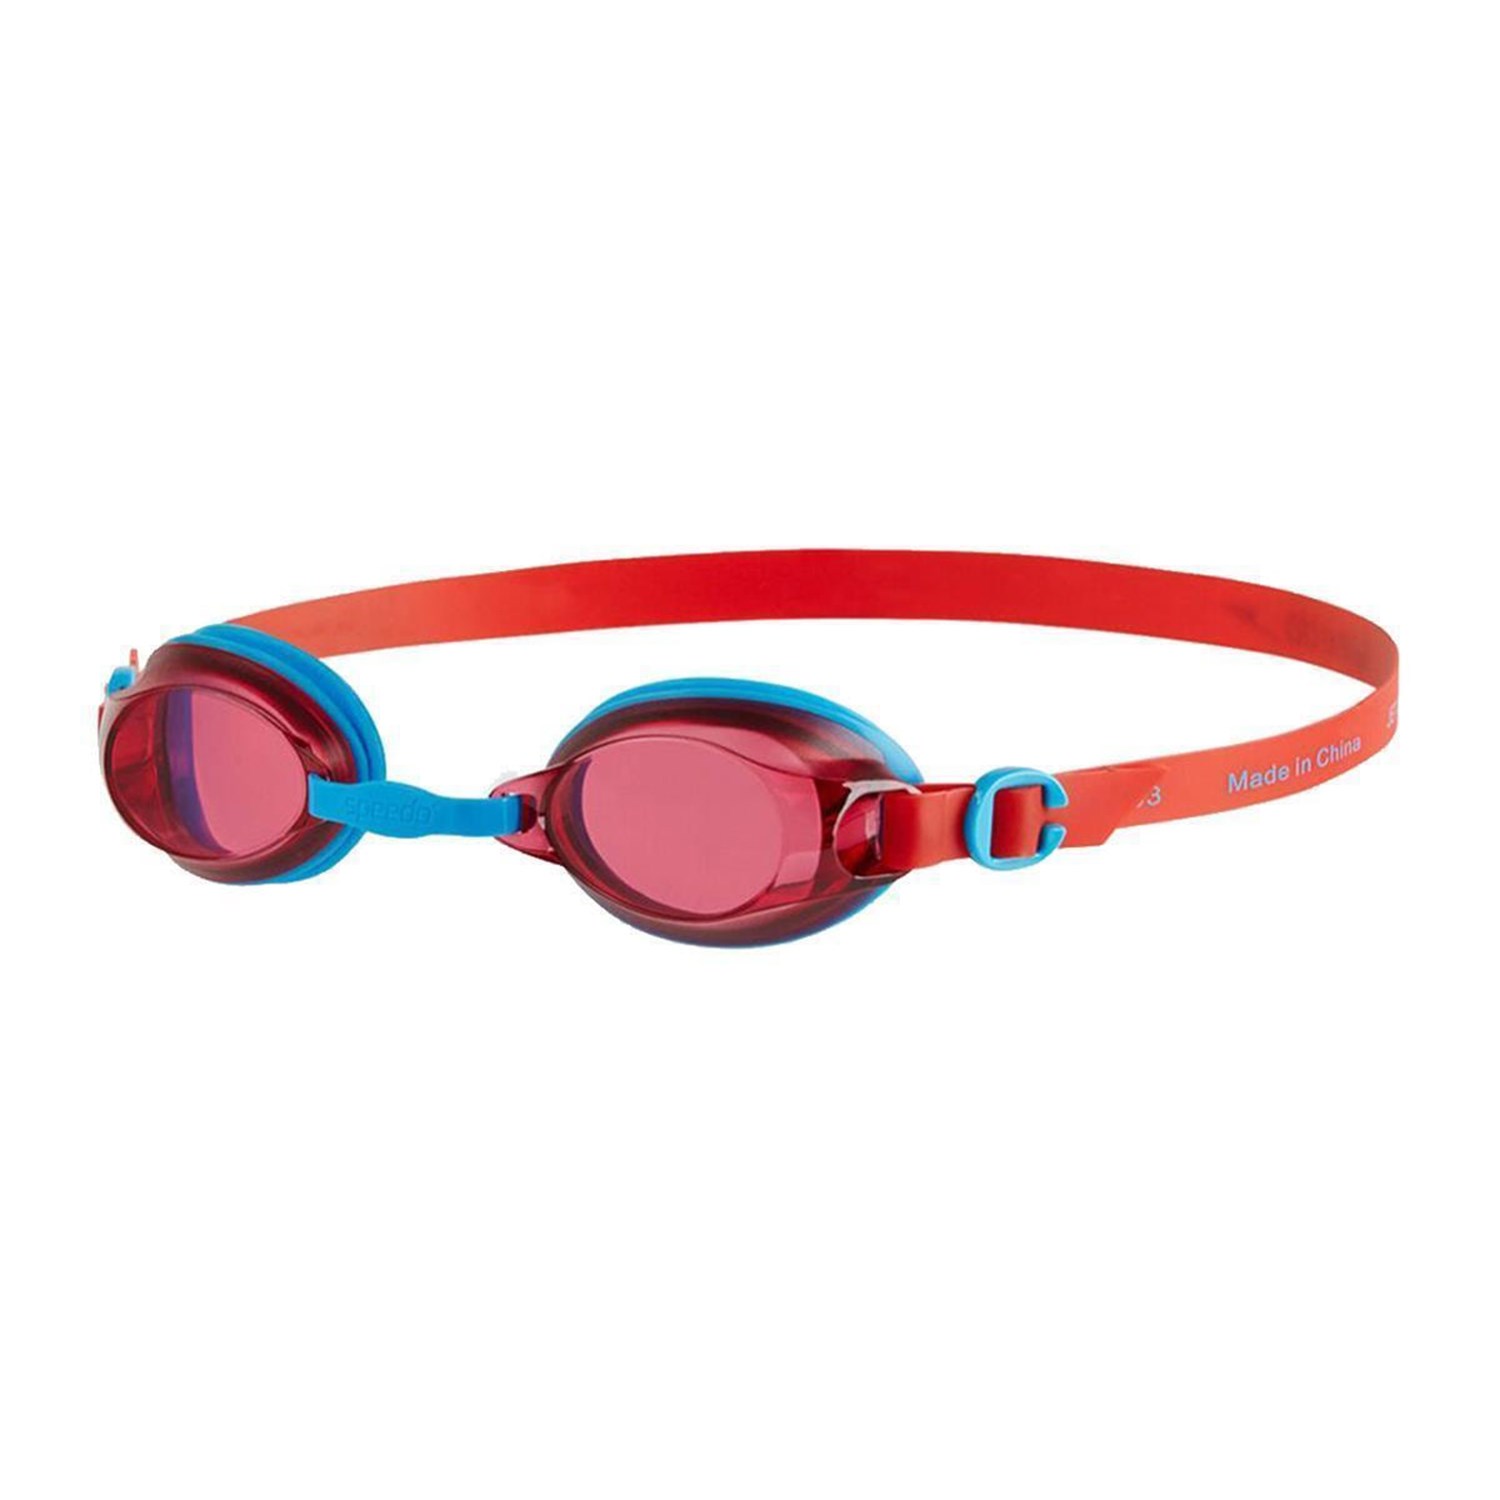 Speedo Jet Çocuk Yüzücü Gözlüğü Mavi - Kırmızı